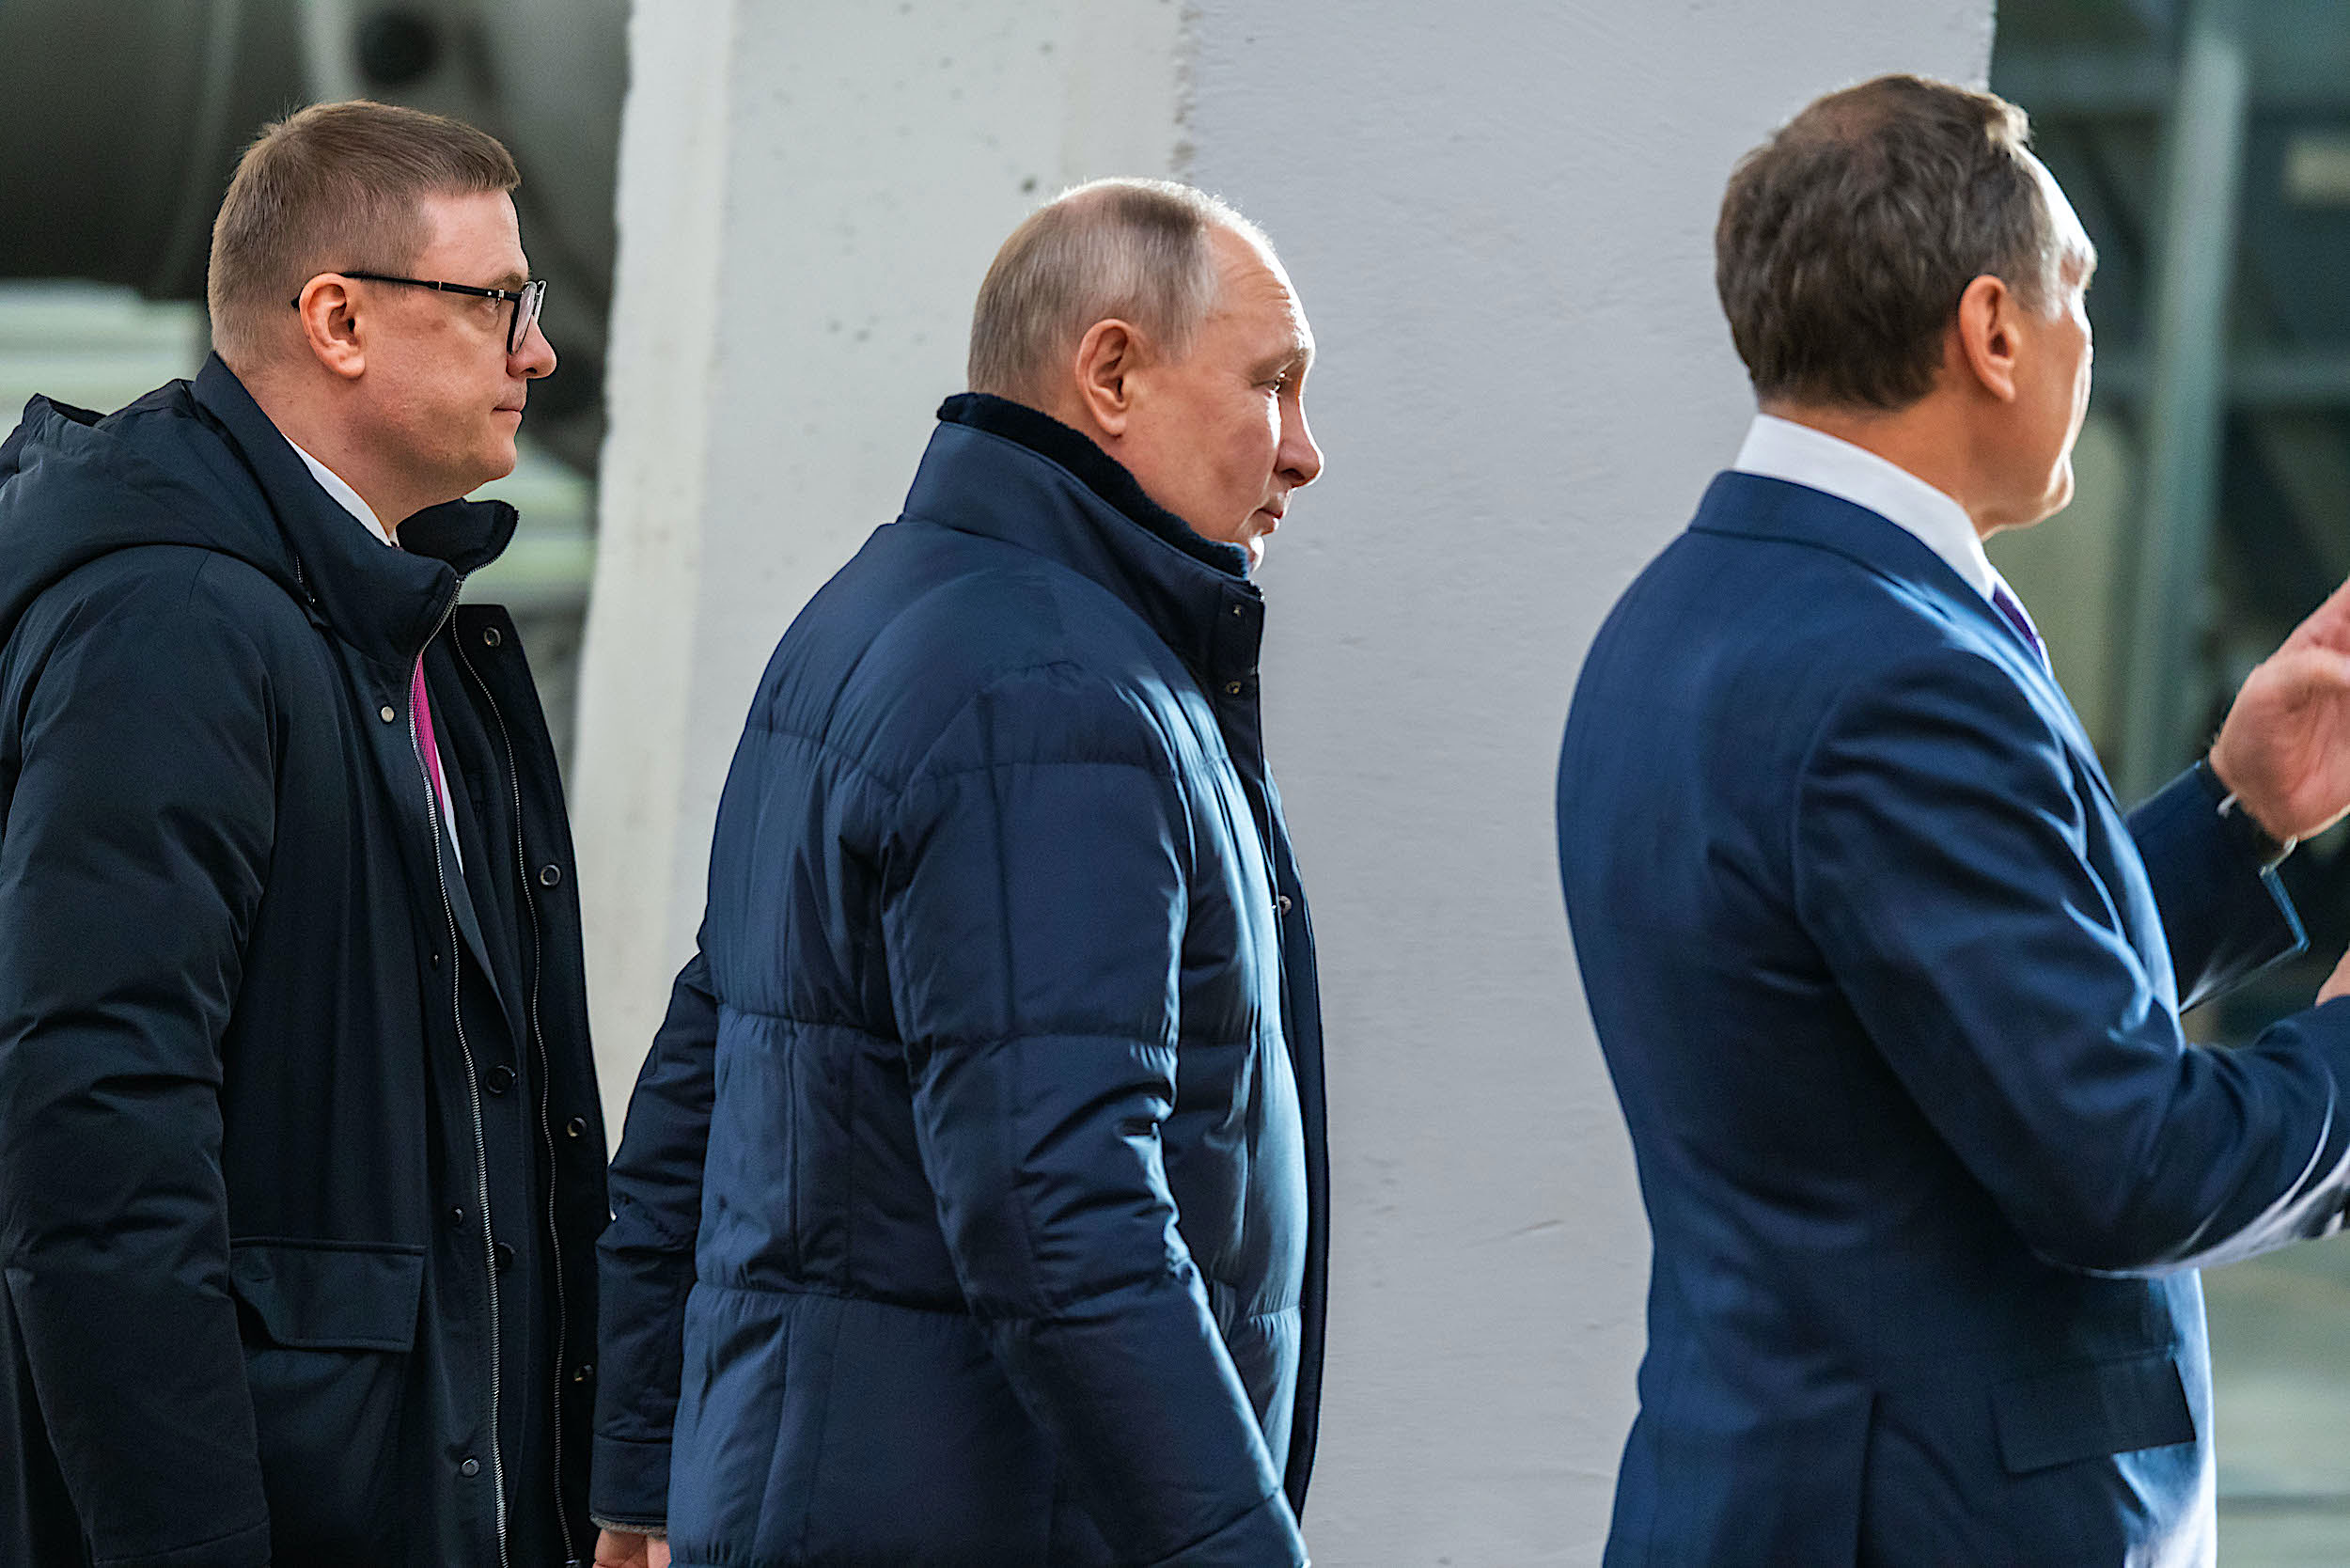 Политологи отметили высокий кредит доверия Текслеру со стороны президента Путина